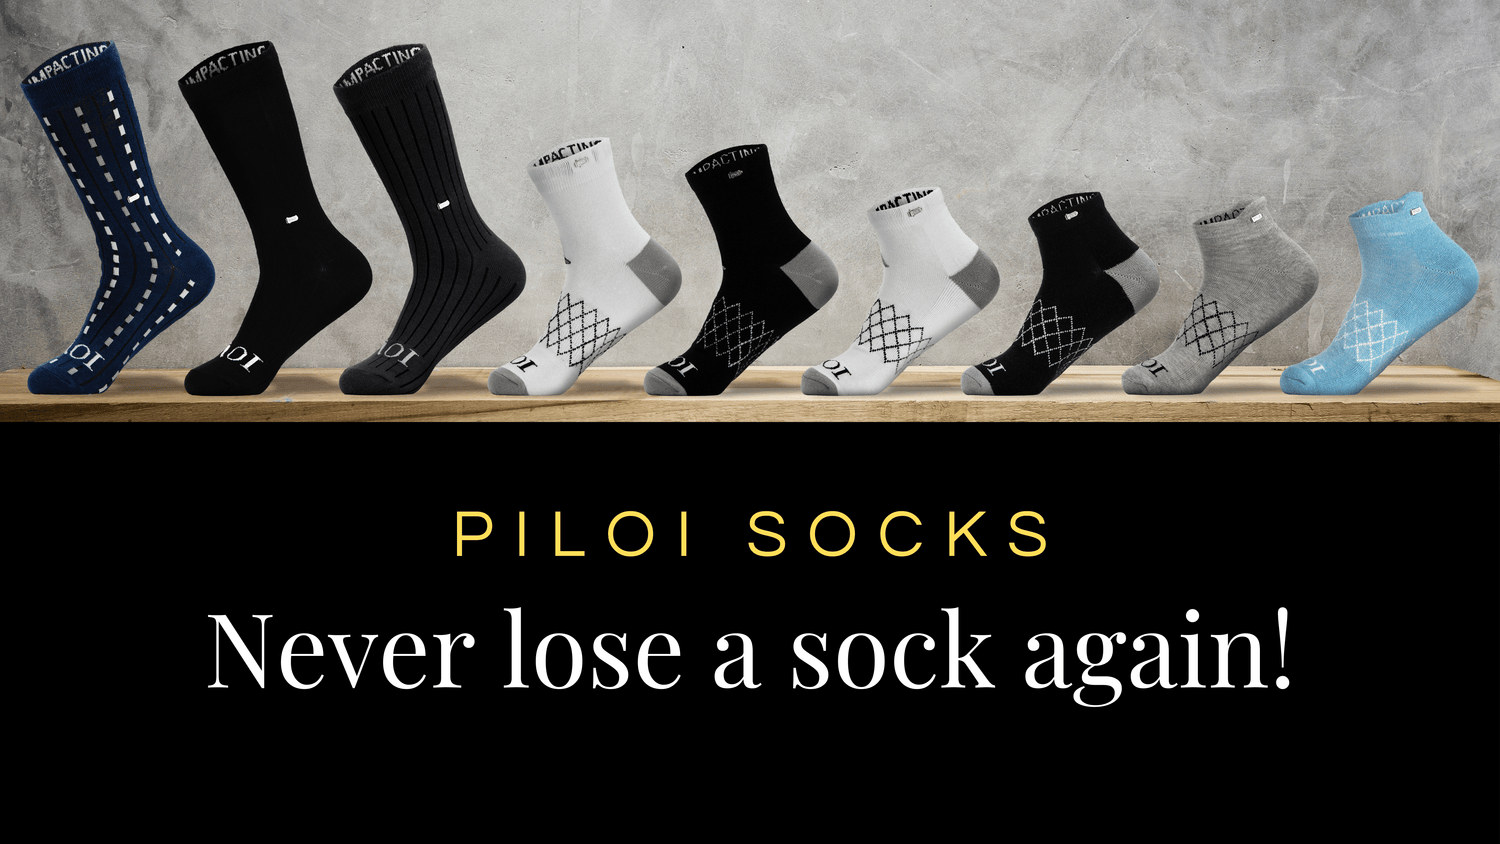 Piloi socks on display